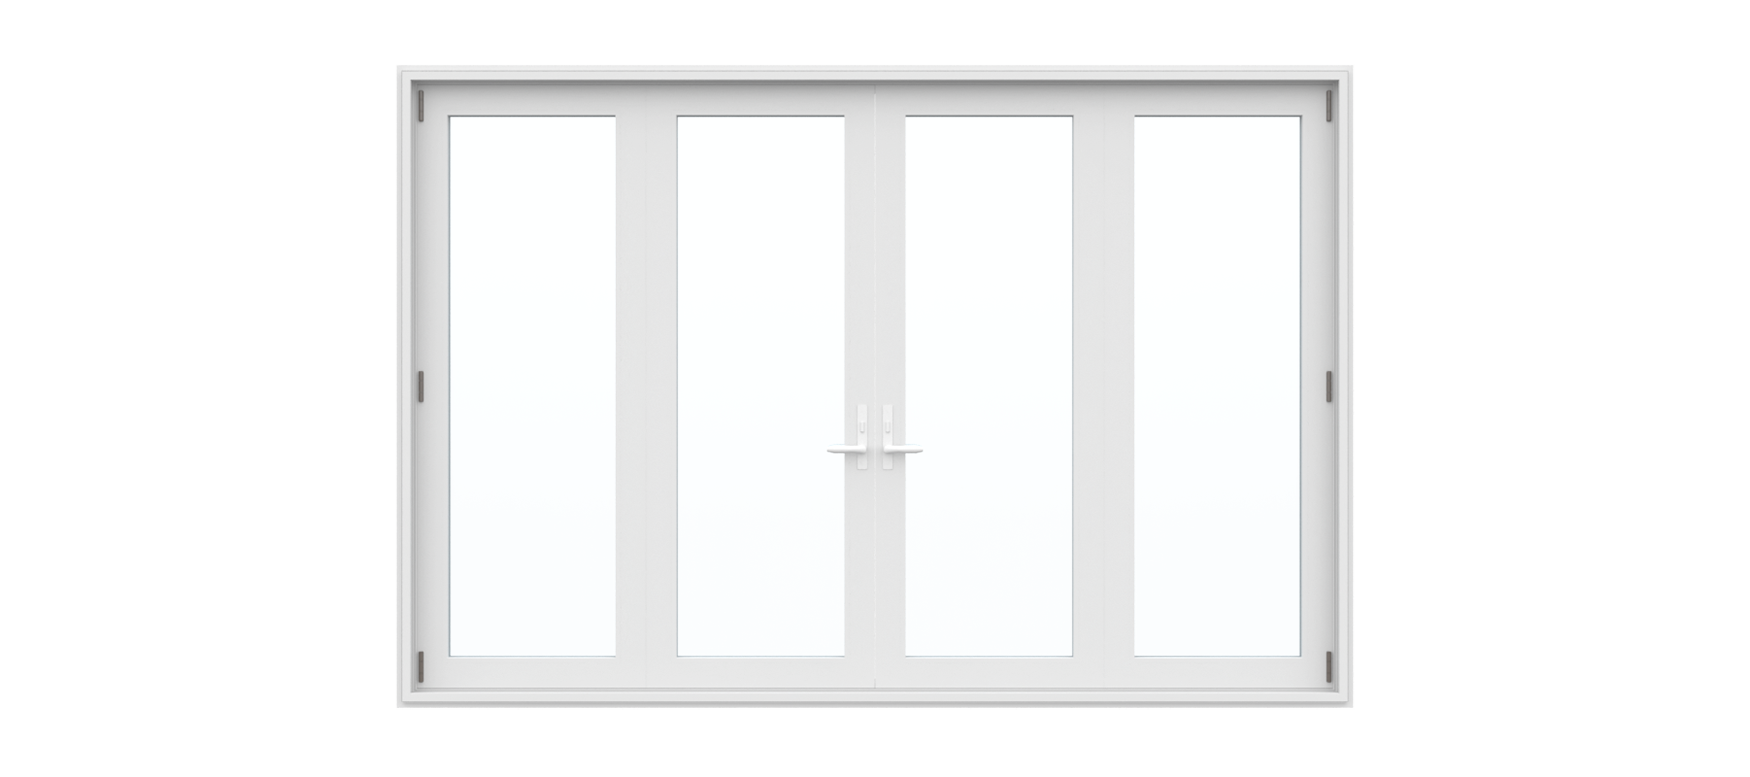 4 Panel Folding Door